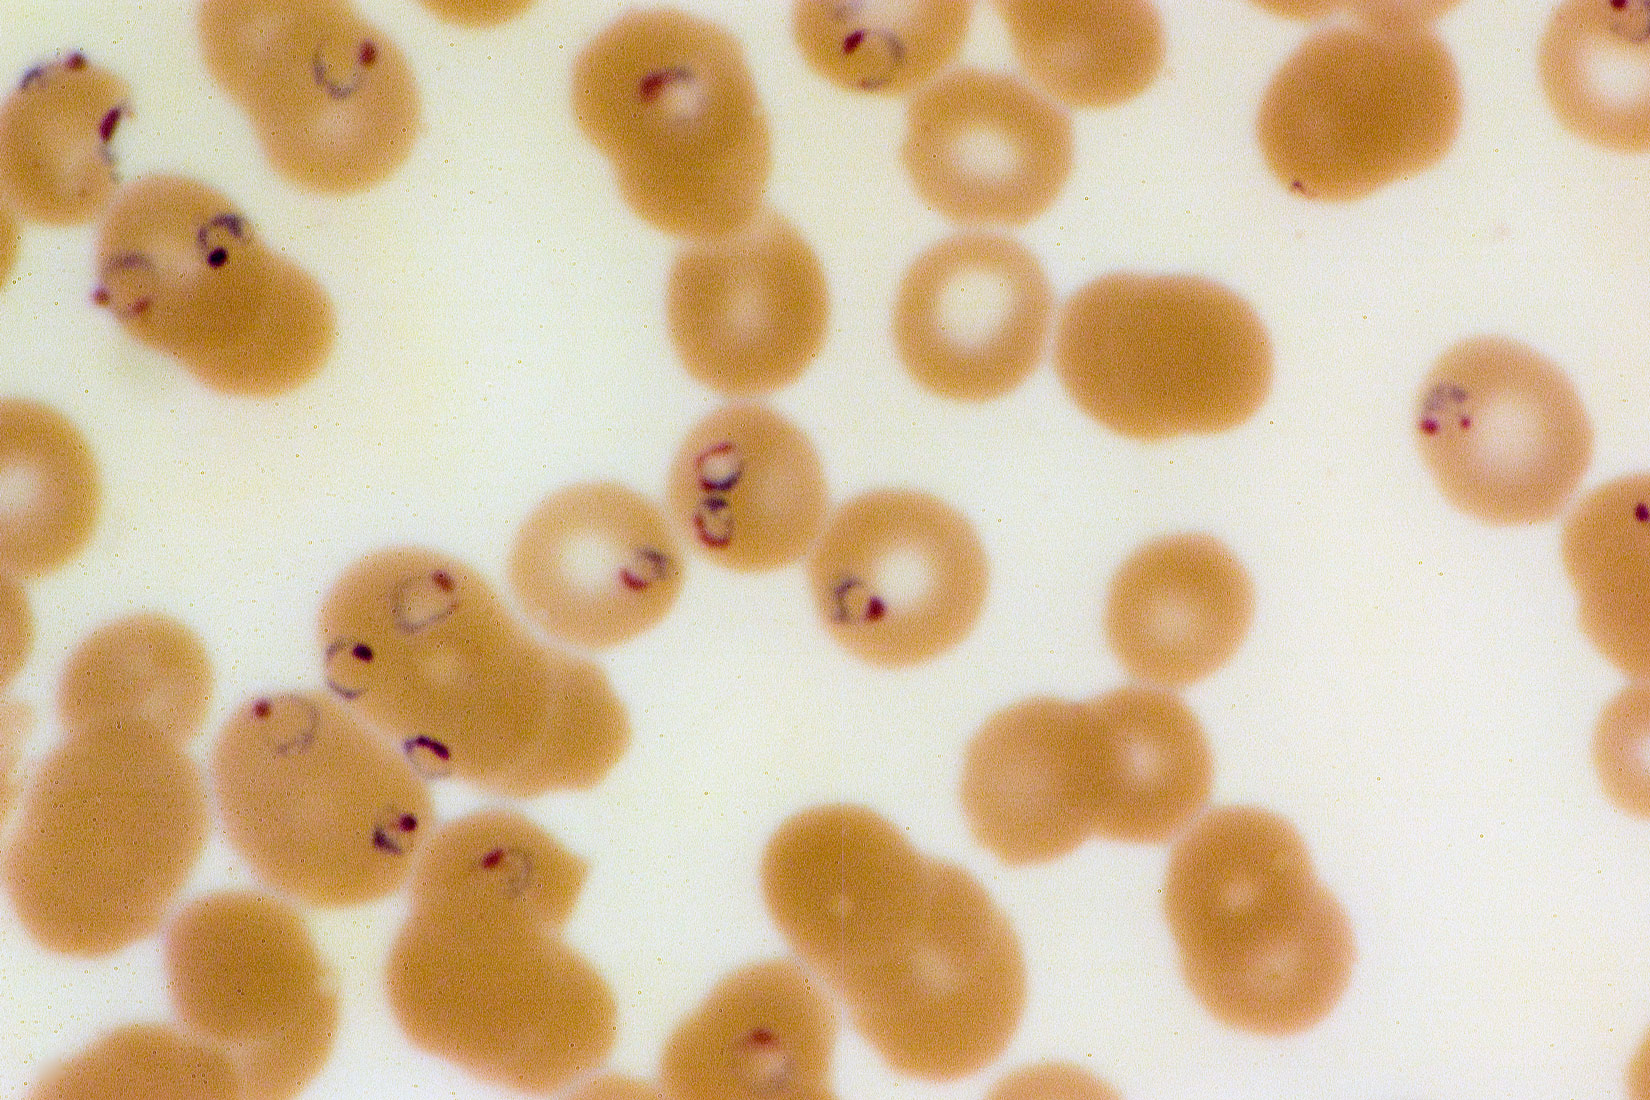 Na slici se nalazi dvadesetak kugličastih organizama bež boje s bijelim središtem. U ponekim stanicama nalaze se kružne strukture ljubičastog oblika.